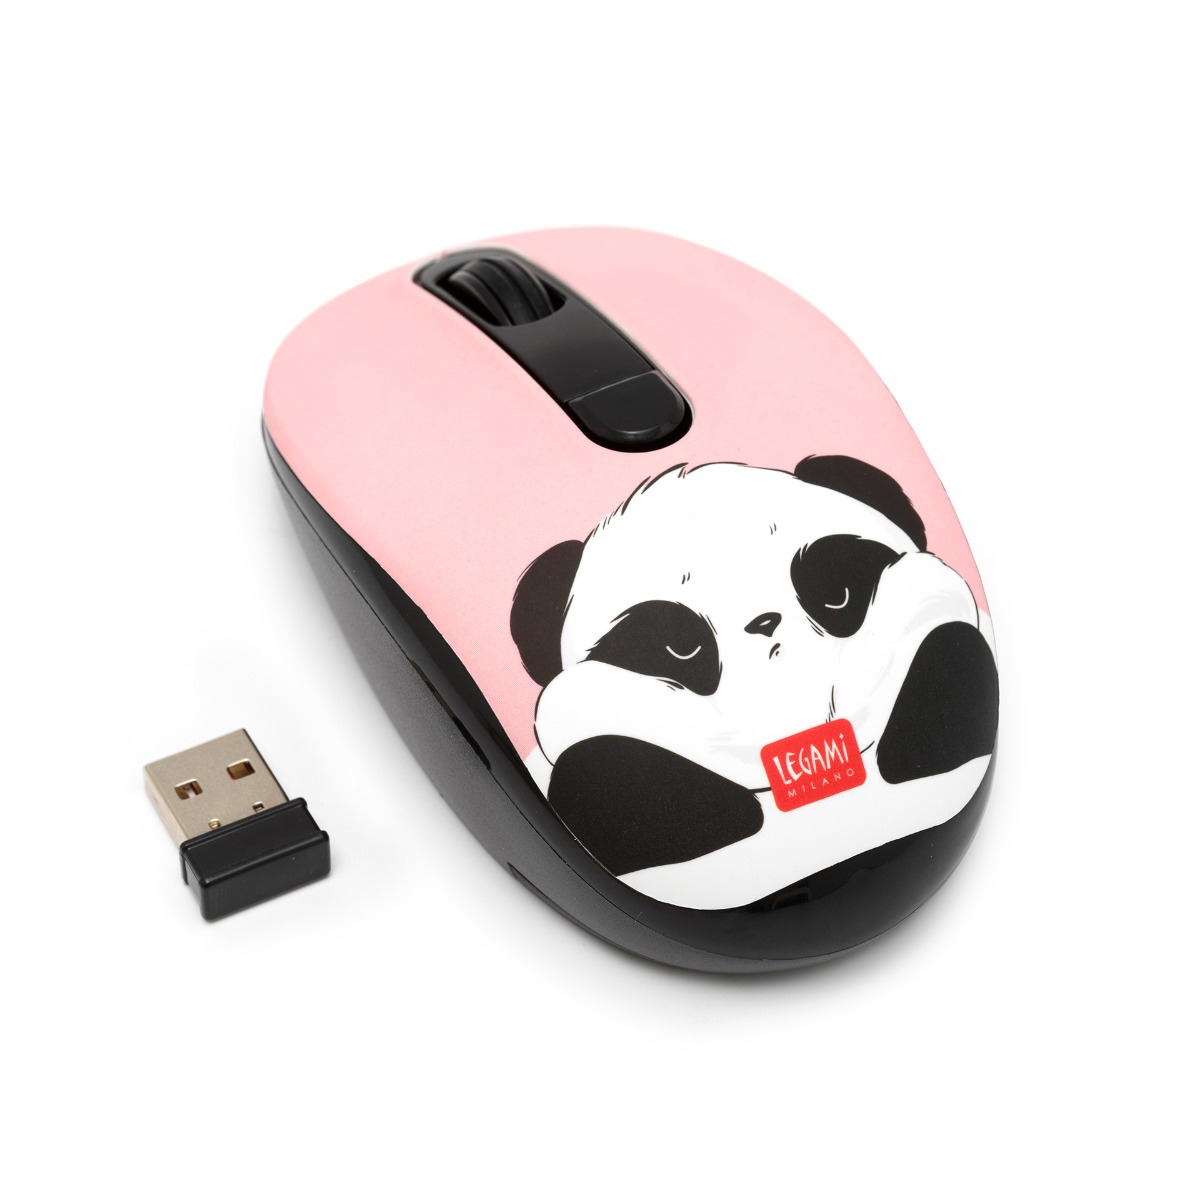 Legami Bezdrôtová myš Panda s USB prijímačom